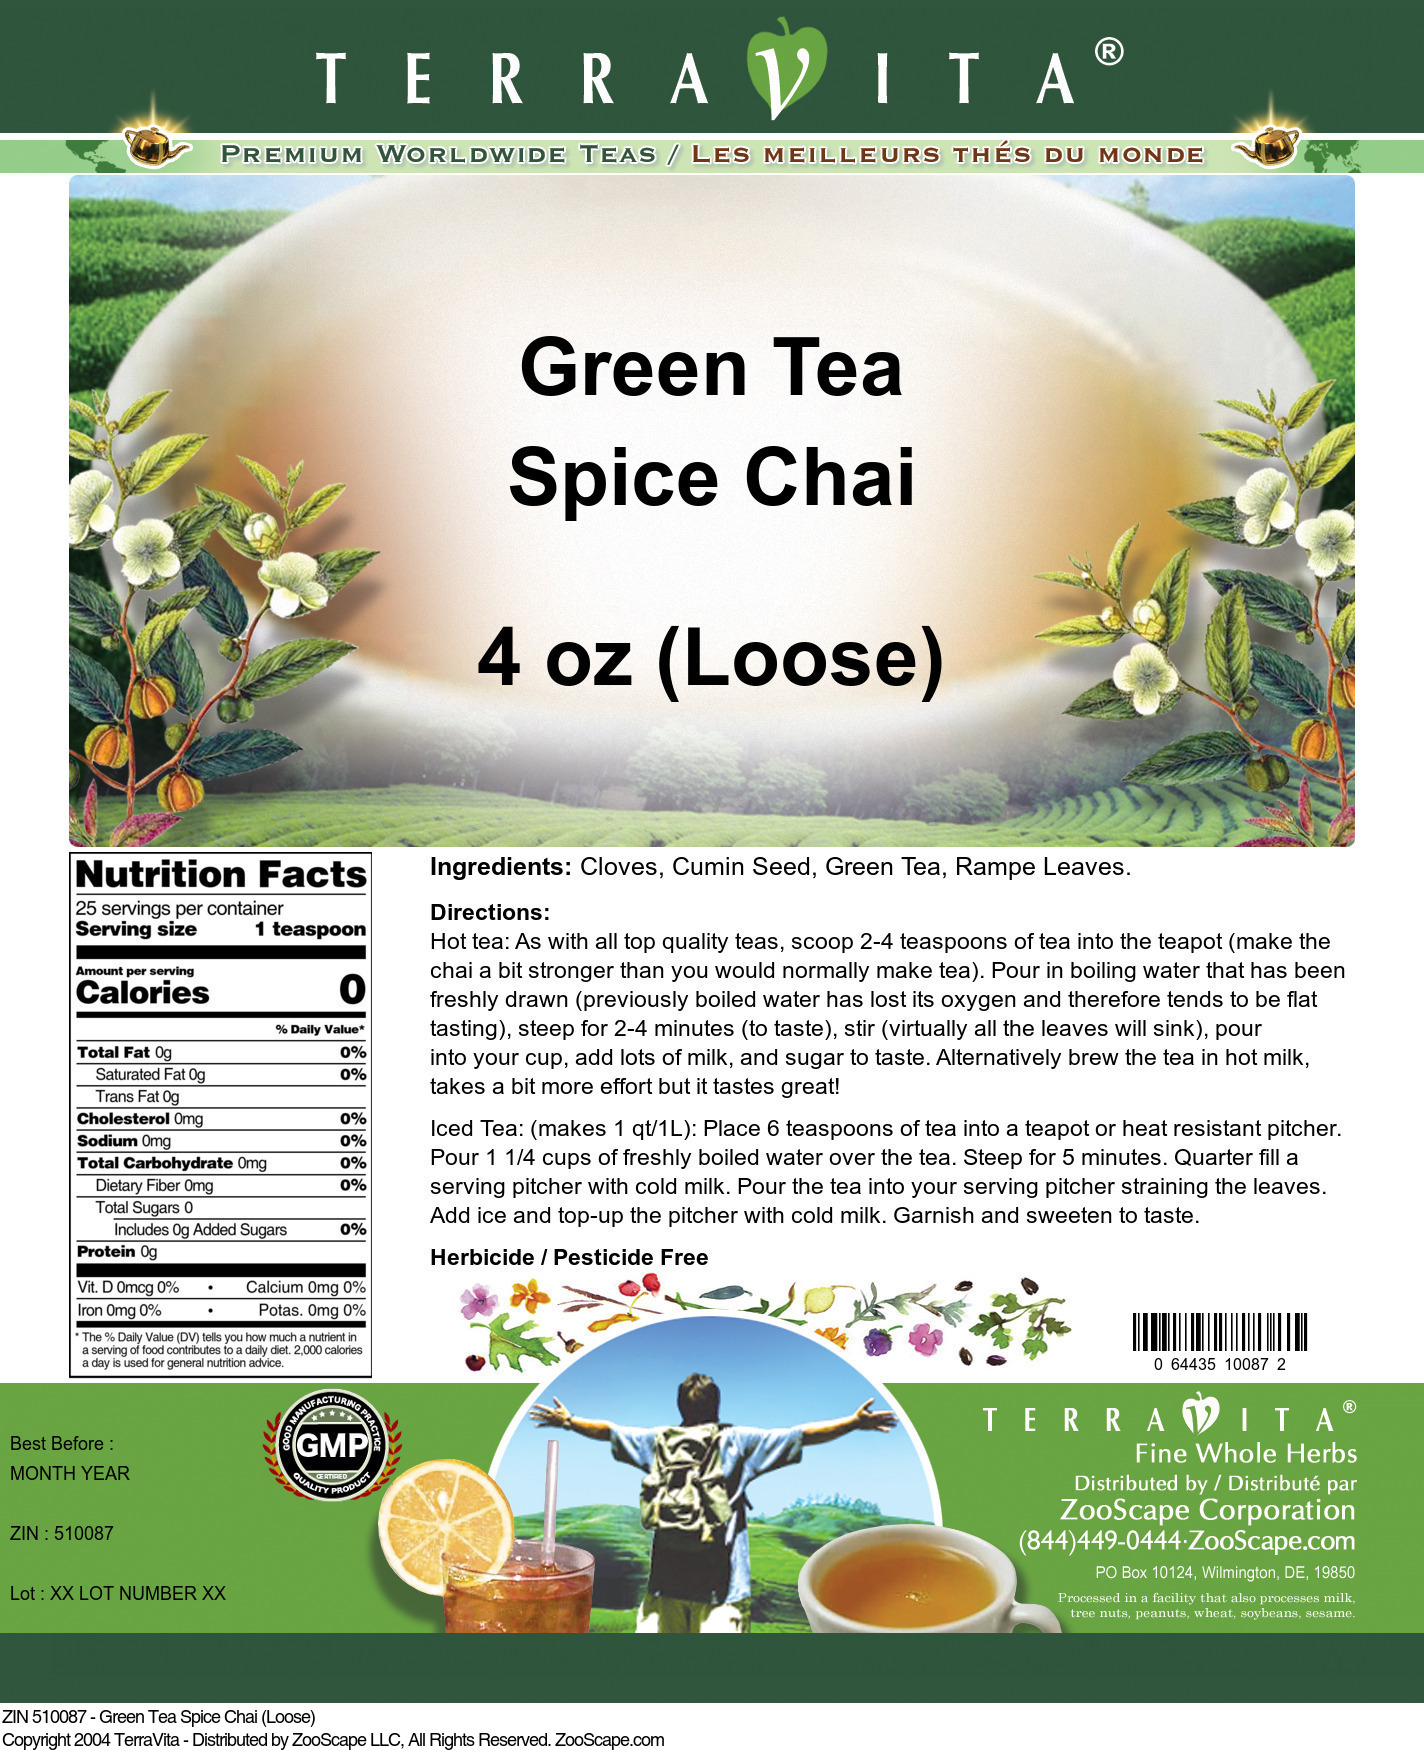 Green Tea Spice Chai (Loose) - Label